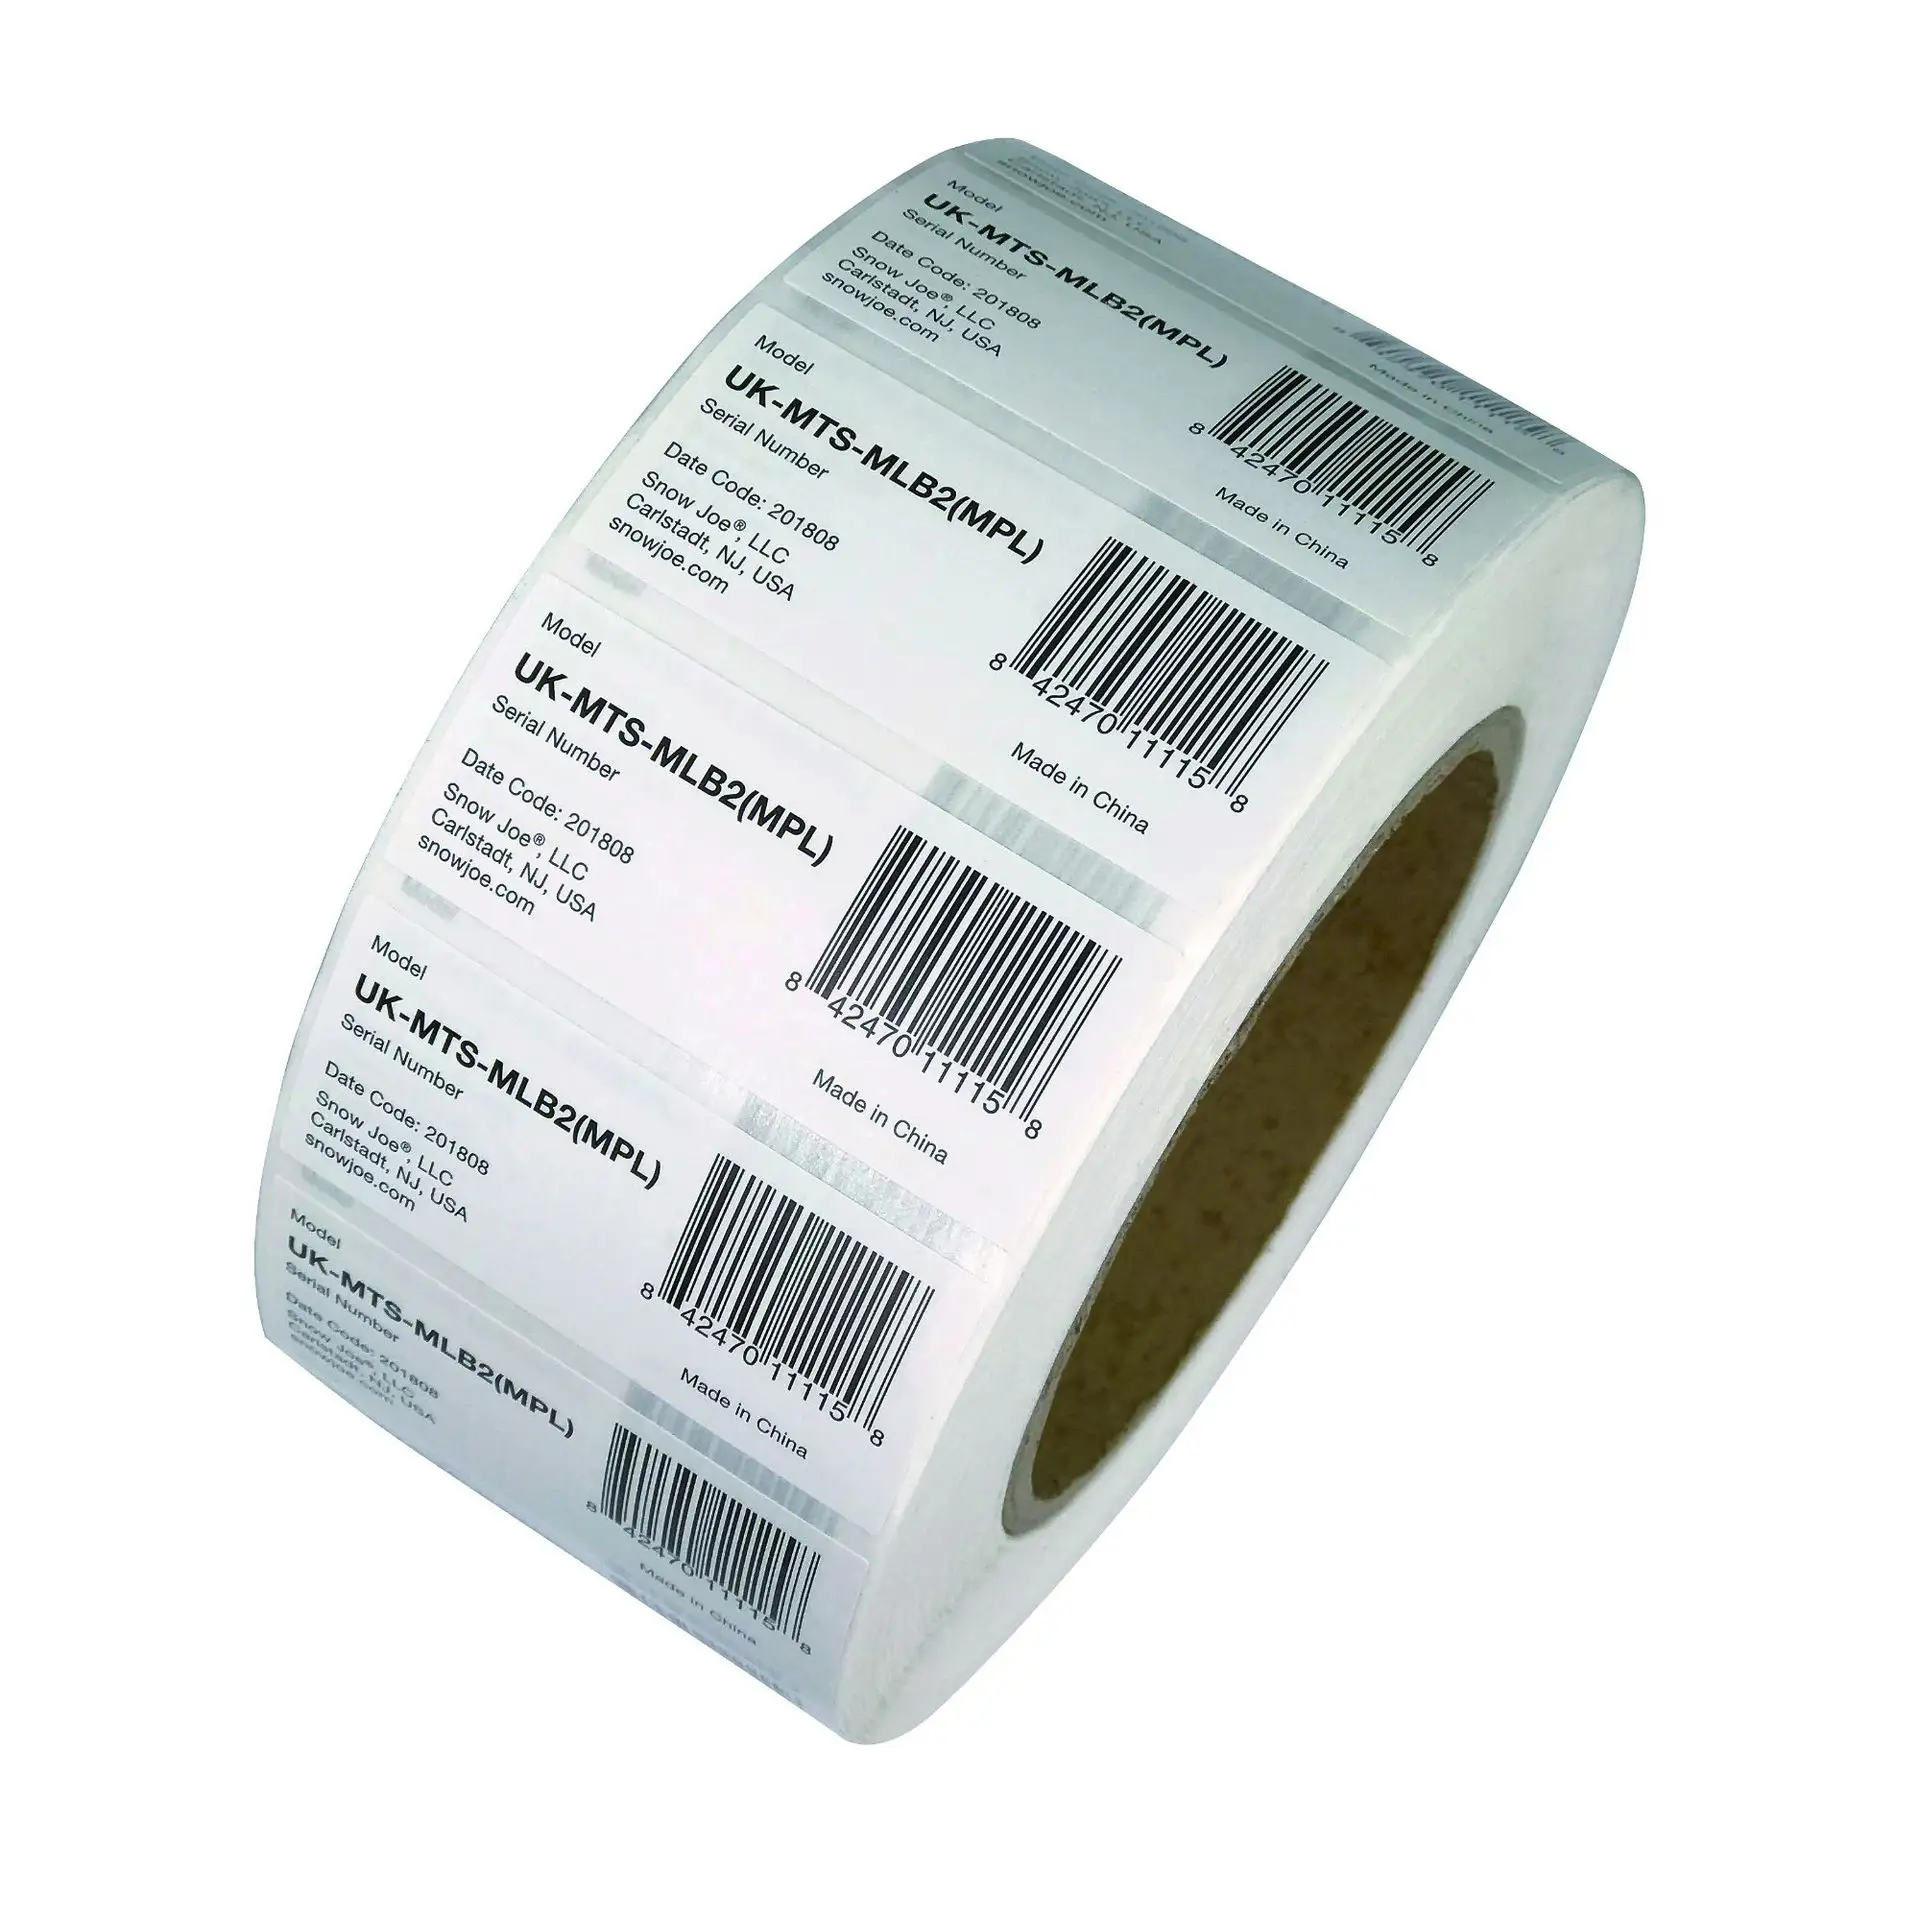 Özel UPC barkod etiket etiketleri beyaz kaplamalı kağıt baskı yapıştırıcı çubuk etiket kraft kağıt Z ebra kod etiketleri